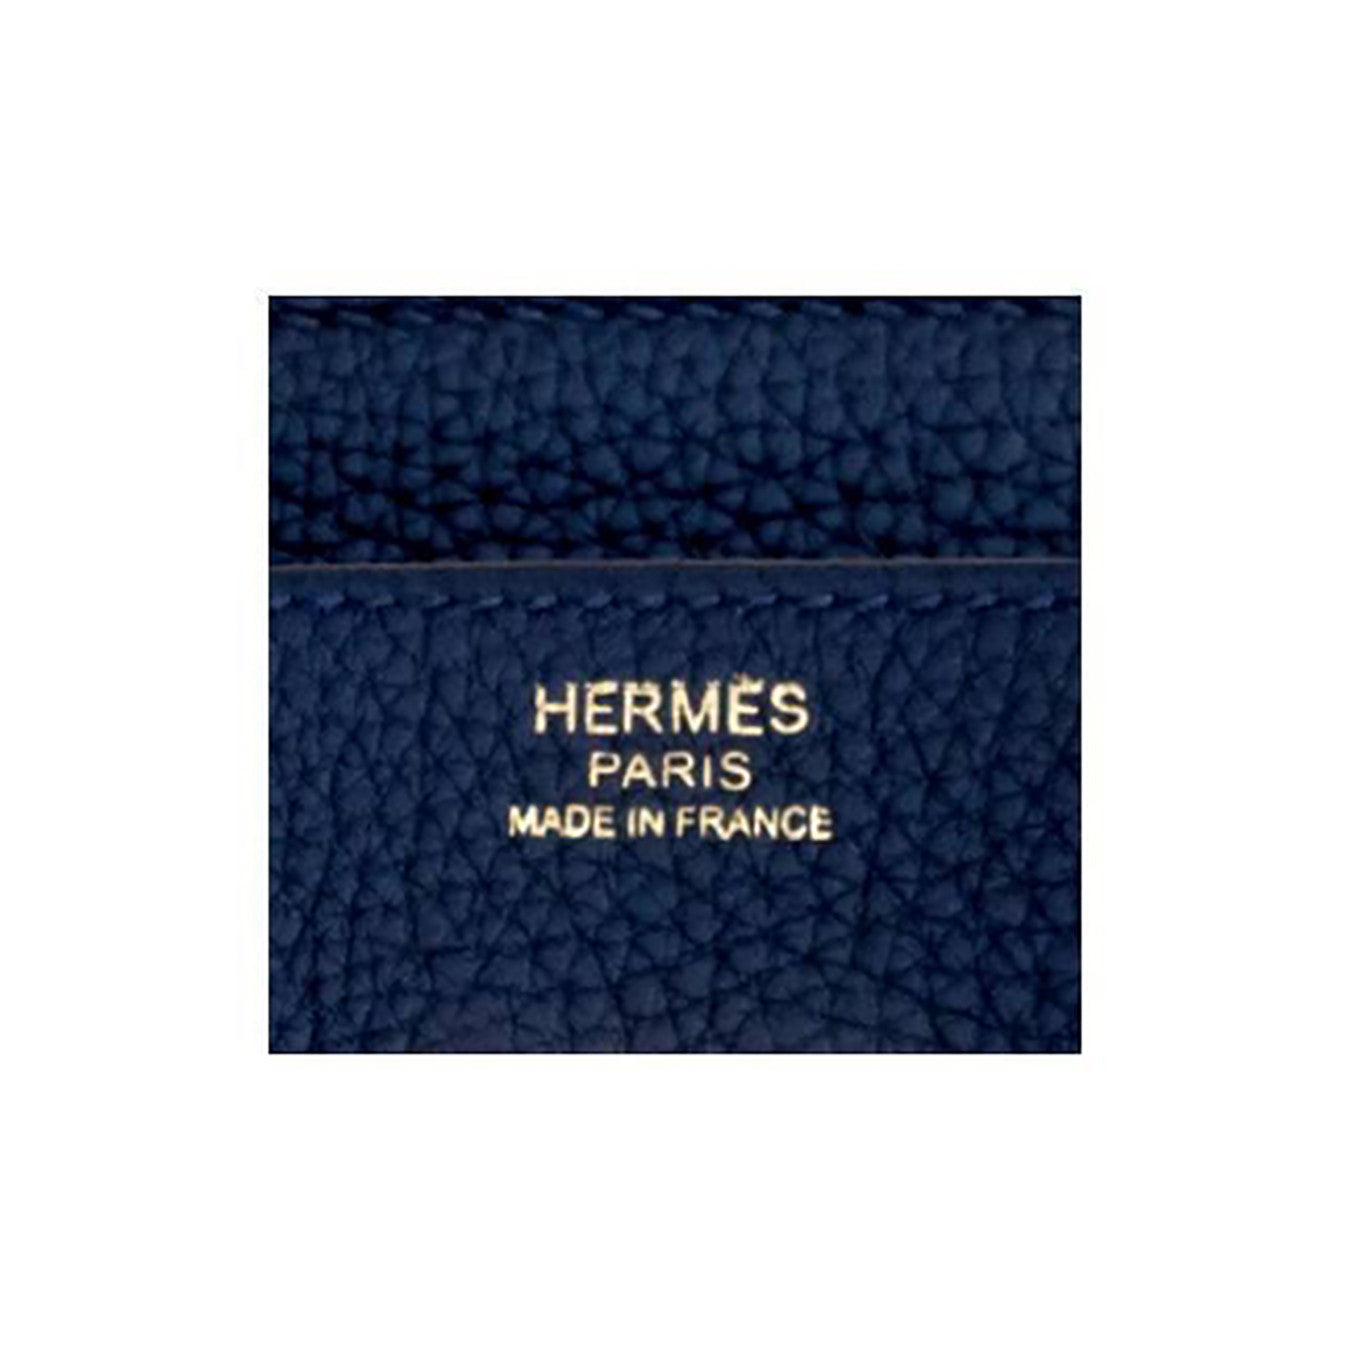 Hermès Birkin Bag 30cm in Bleu Nuit Togo Leather with Gold Hardware –  Sellier